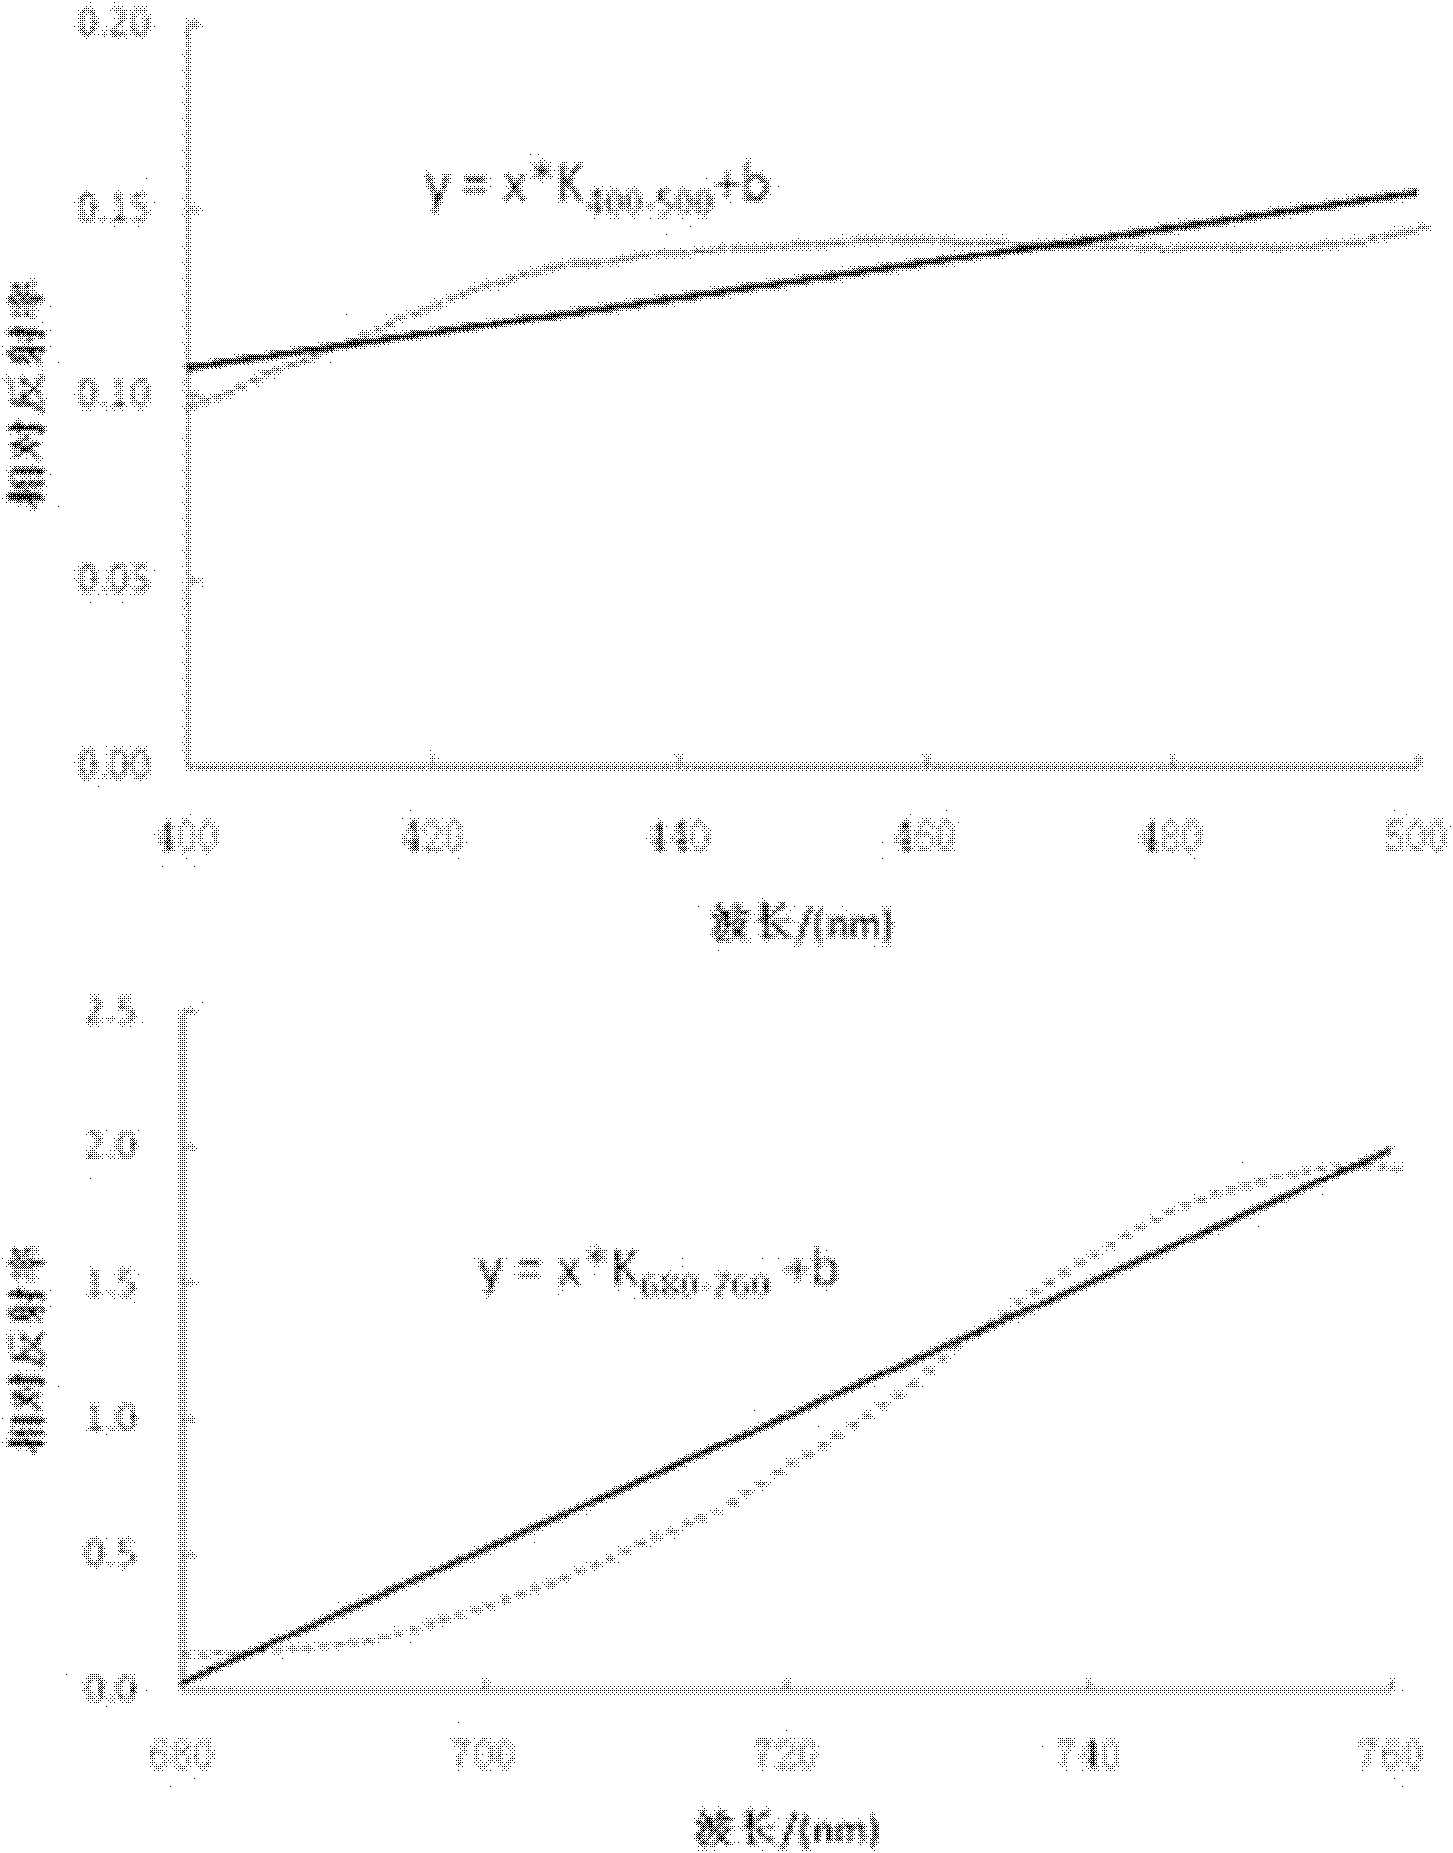 Estimation method of total nitrogen content in crop canopy leaf